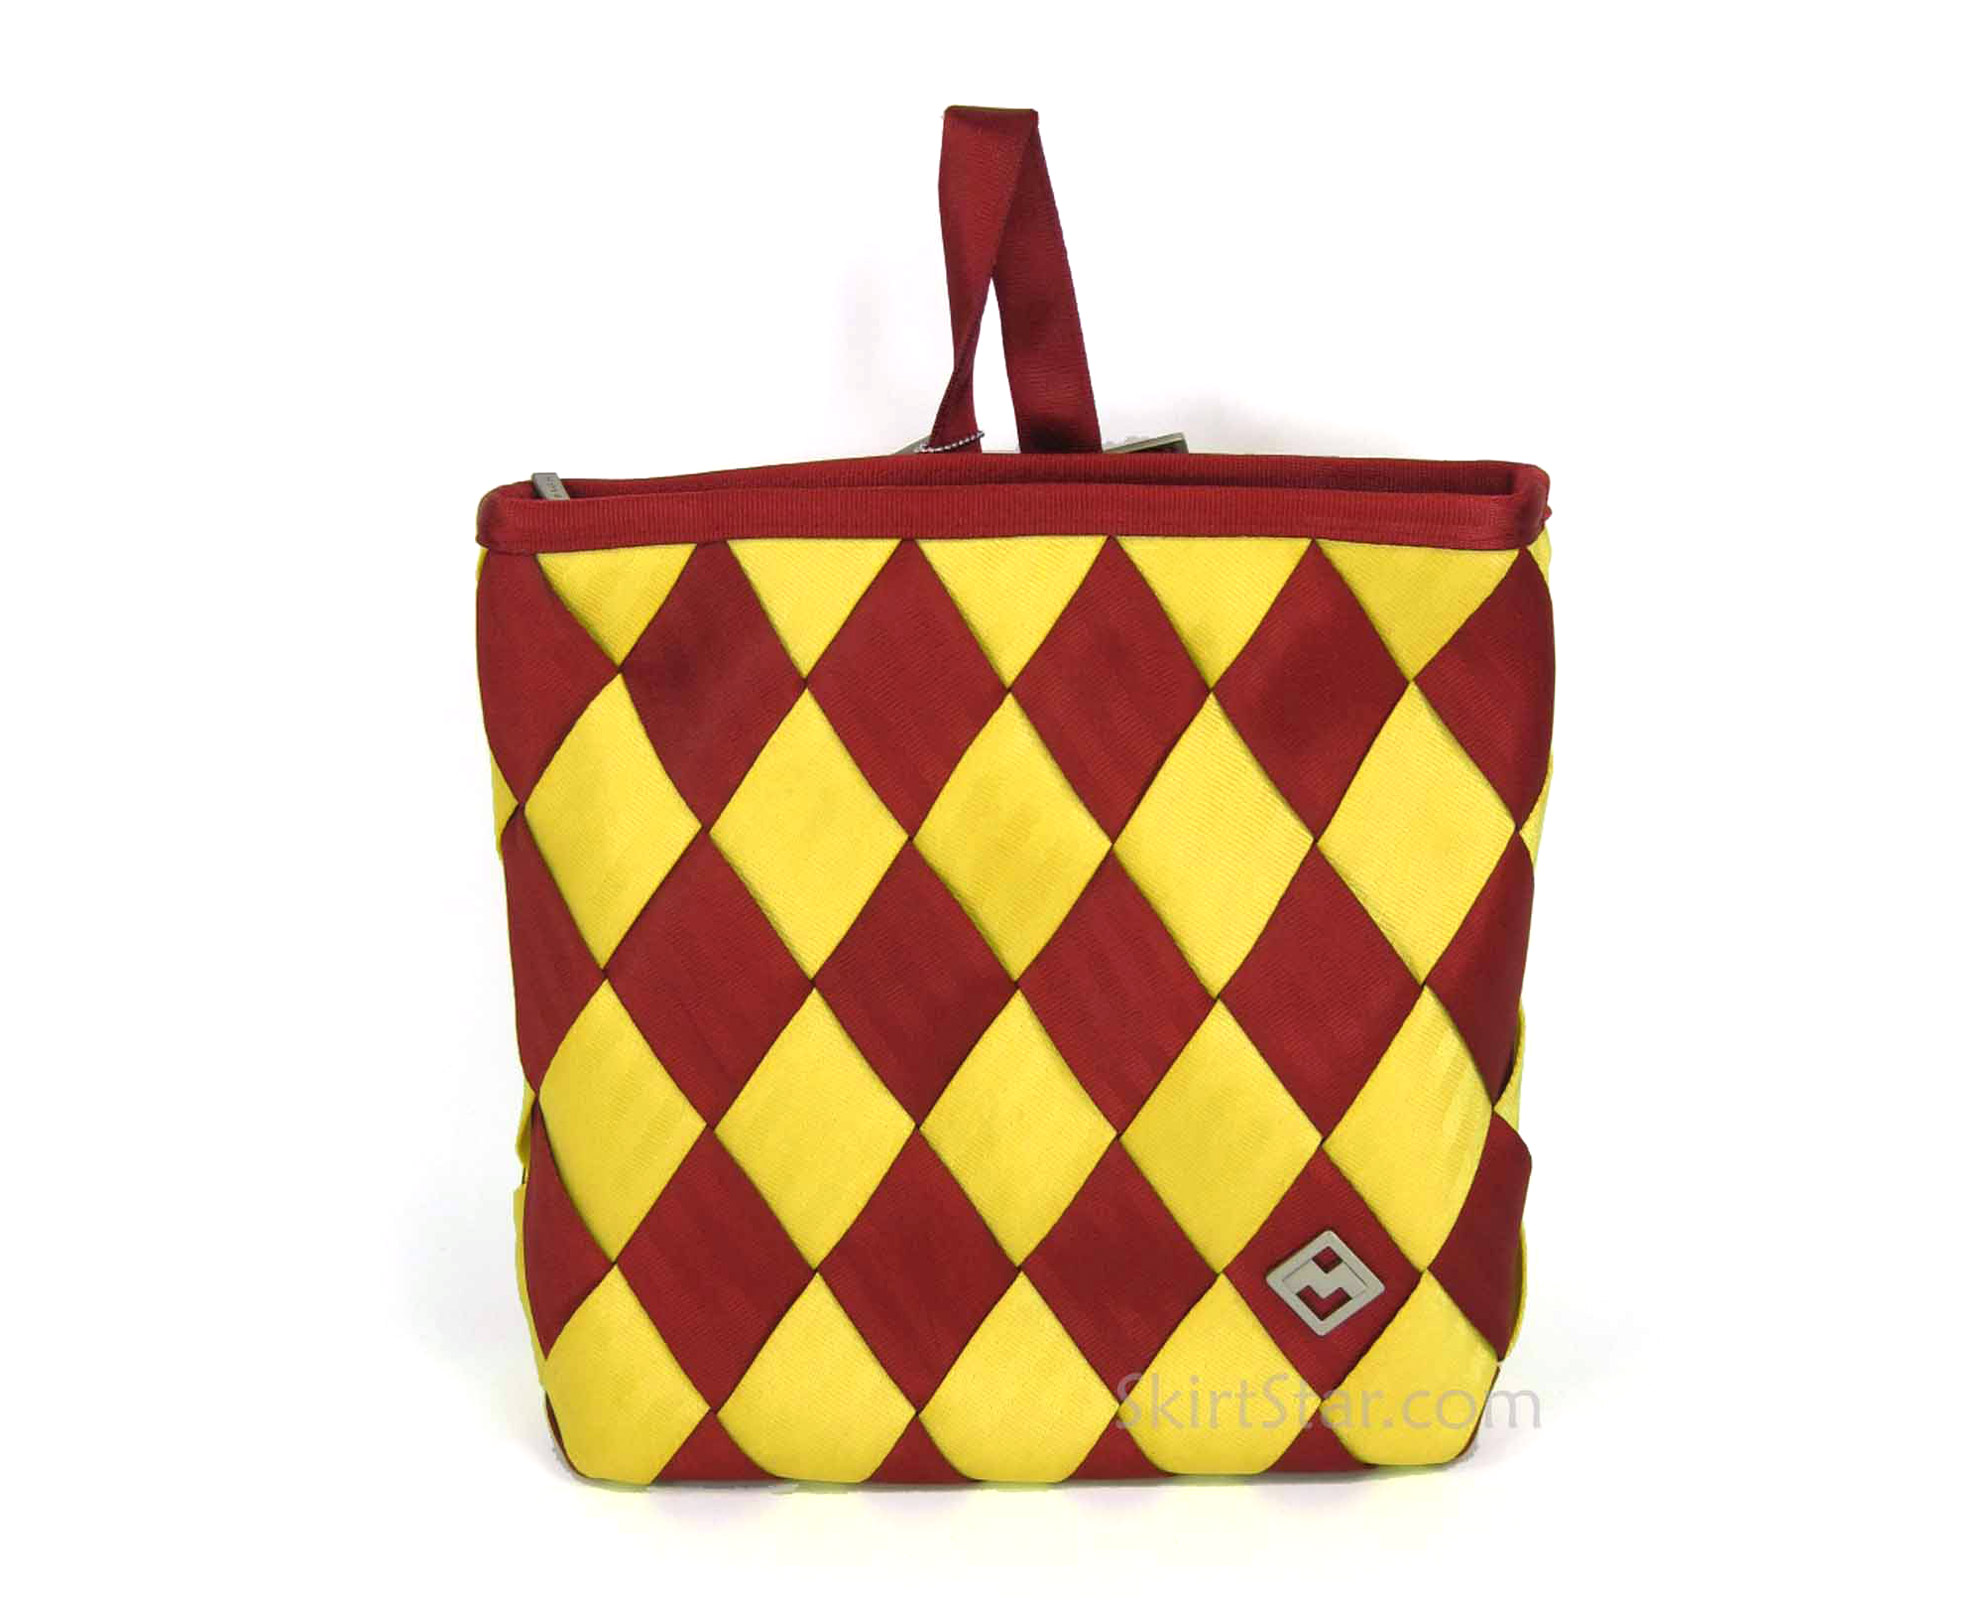 Seatbelt Backpack Purse Hand Bag Maggie USC Trojans Gryffindor Harry Potter Gift